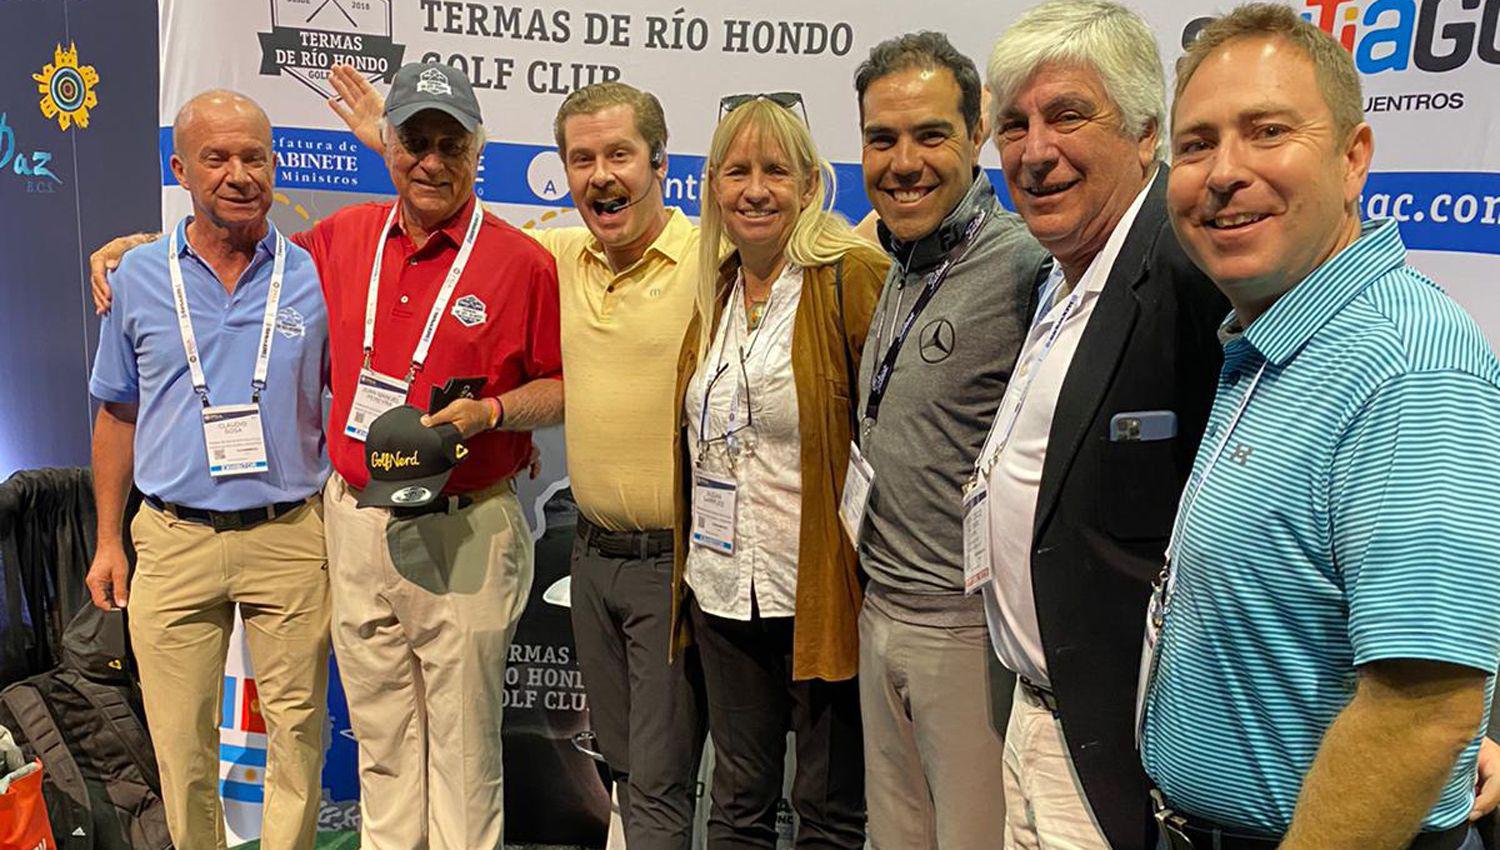 Termas de Riacuteo Hondo Golf Club participa del Merchandise Show en Orlando